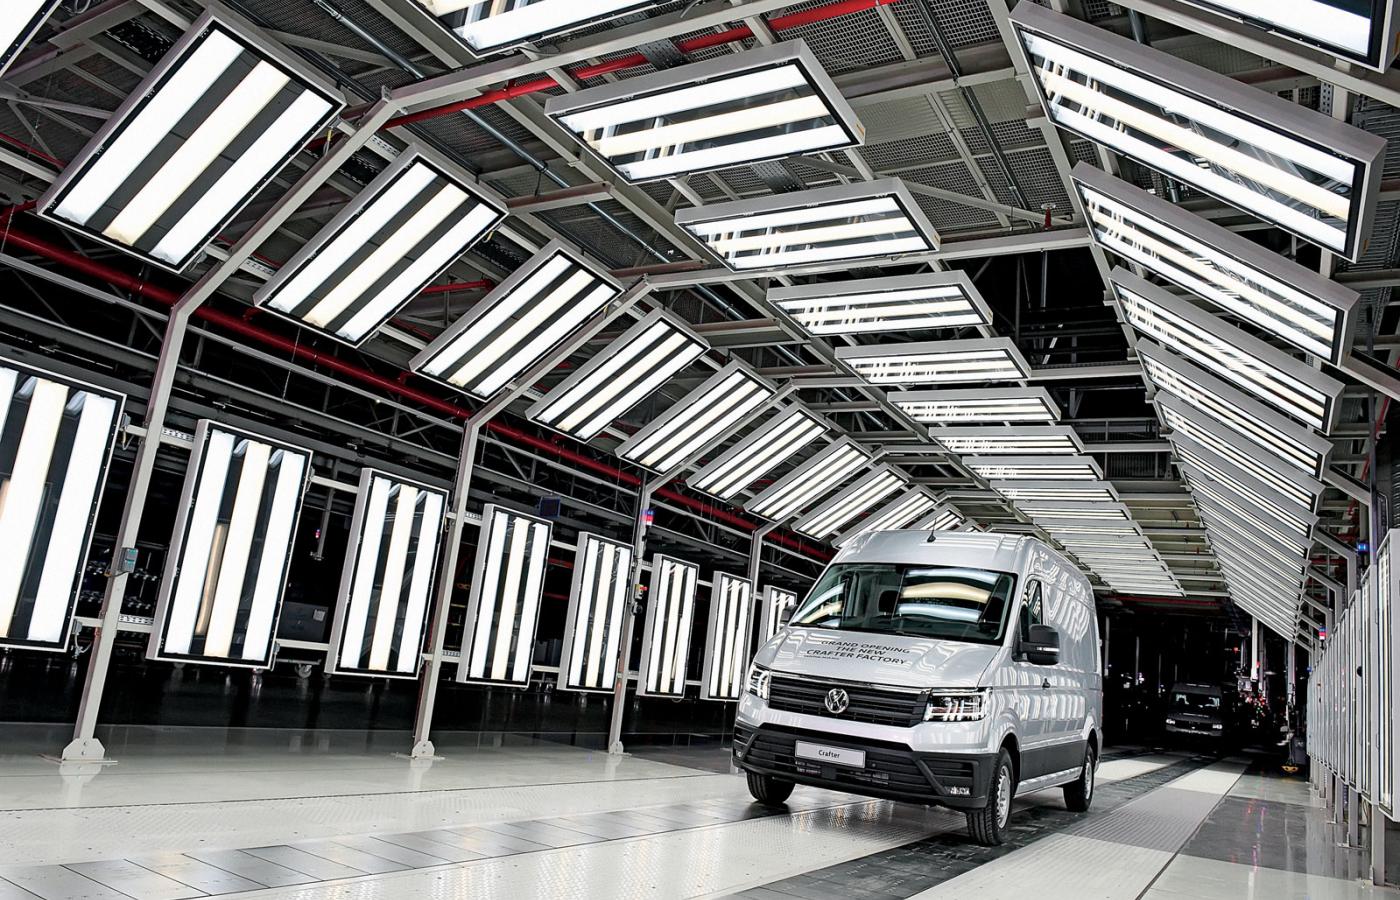 Nowy VW Crafter w otwartej właśnie fabryce Volkswagena we Wrześni